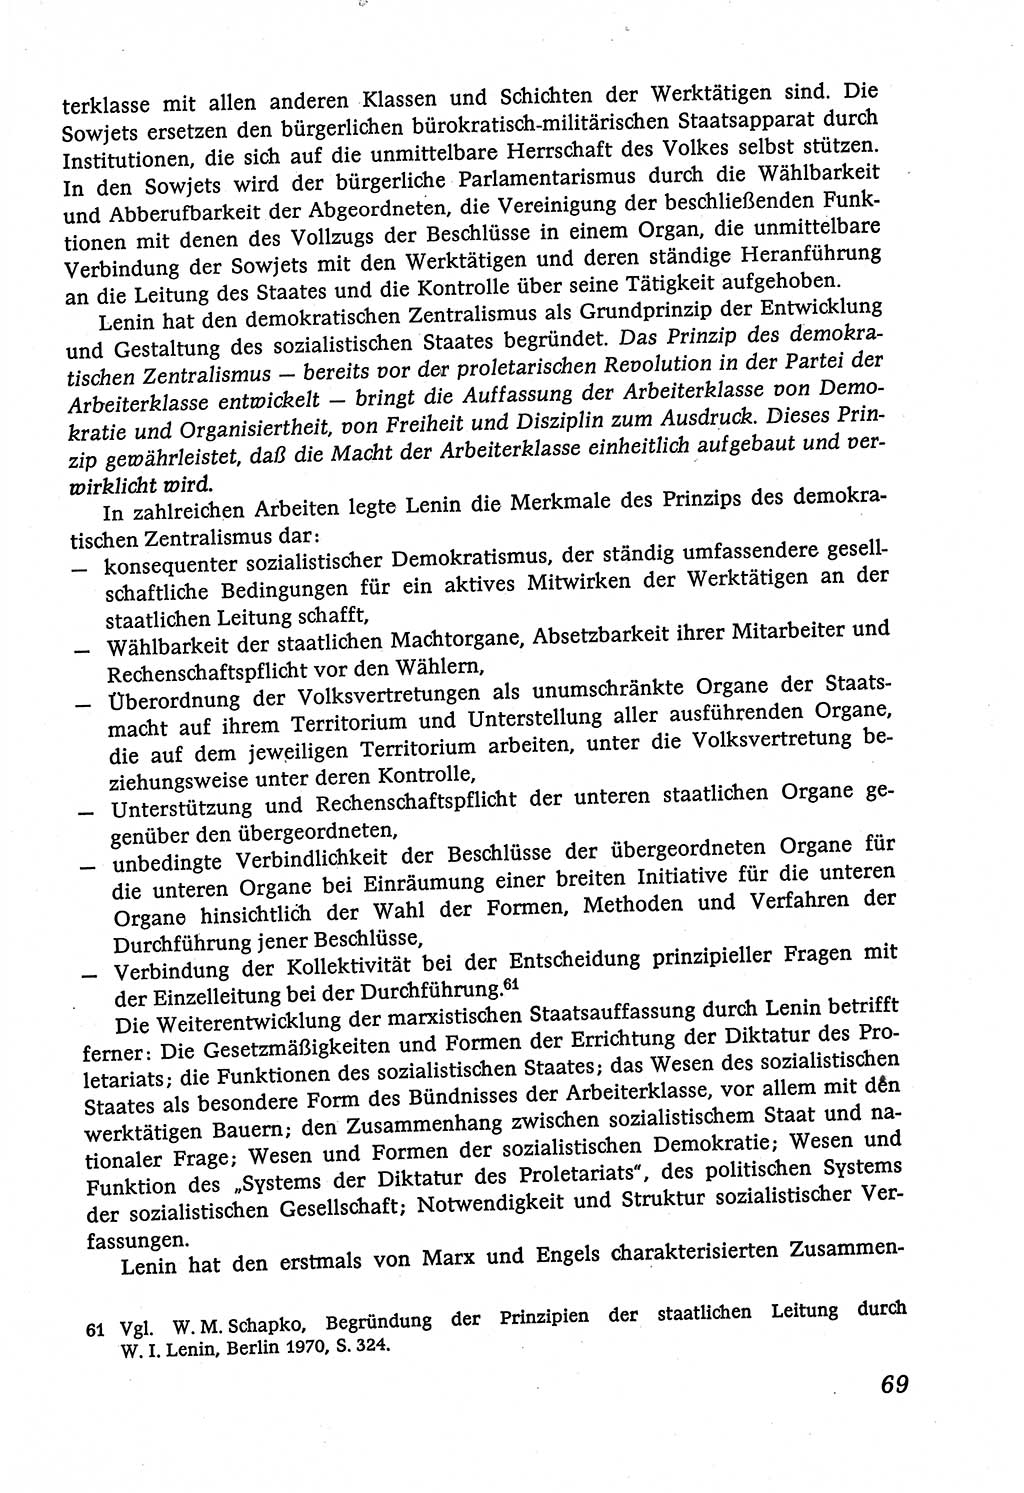 Marxistisch-leninistische (ML) Staats- und Rechtstheorie [Deutsche Demokratische Republik (DDR)], Lehrbuch 1980, Seite 69 (ML St.-R.-Th. DDR Lb. 1980, S. 69)